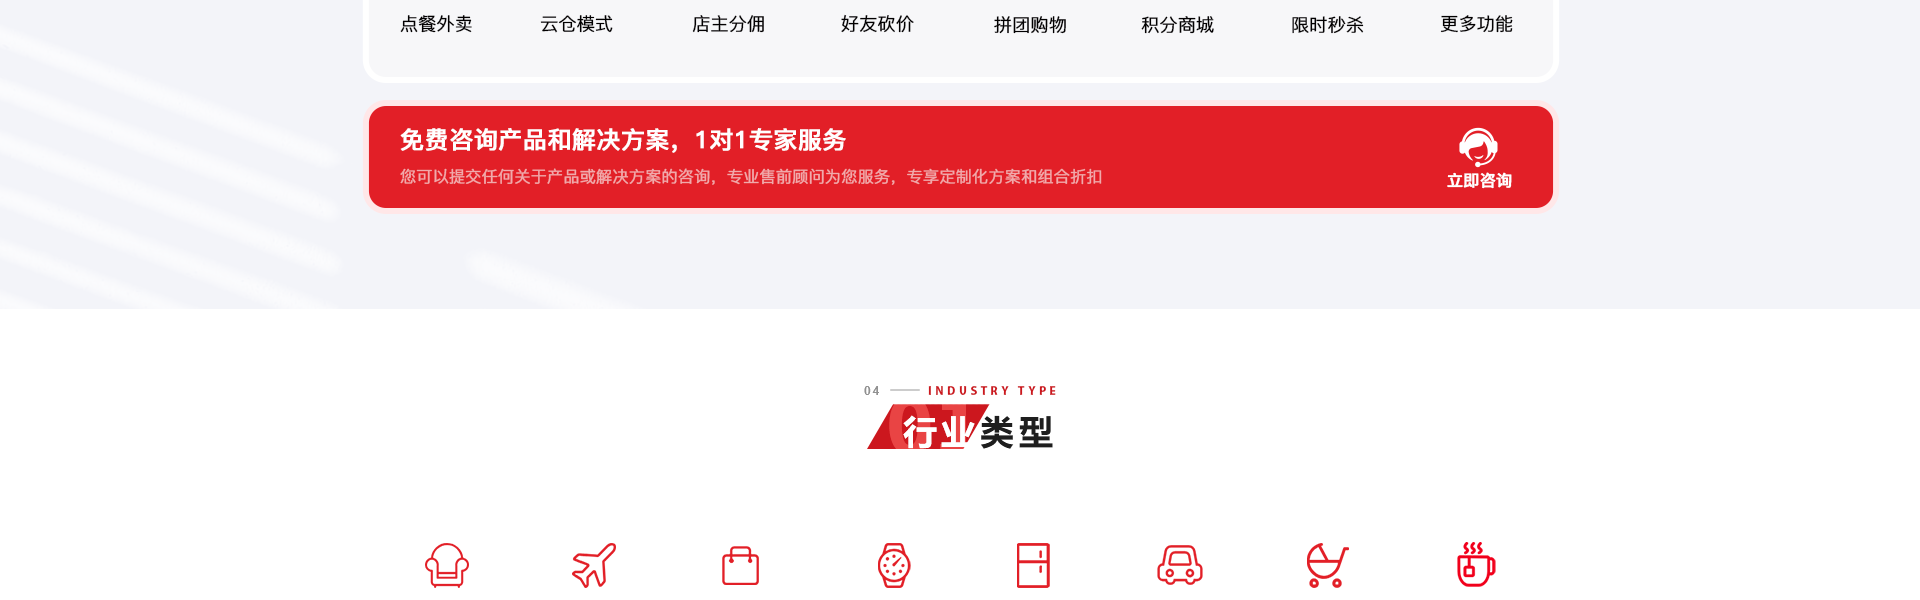 小跑科技-广州老牌技术公司